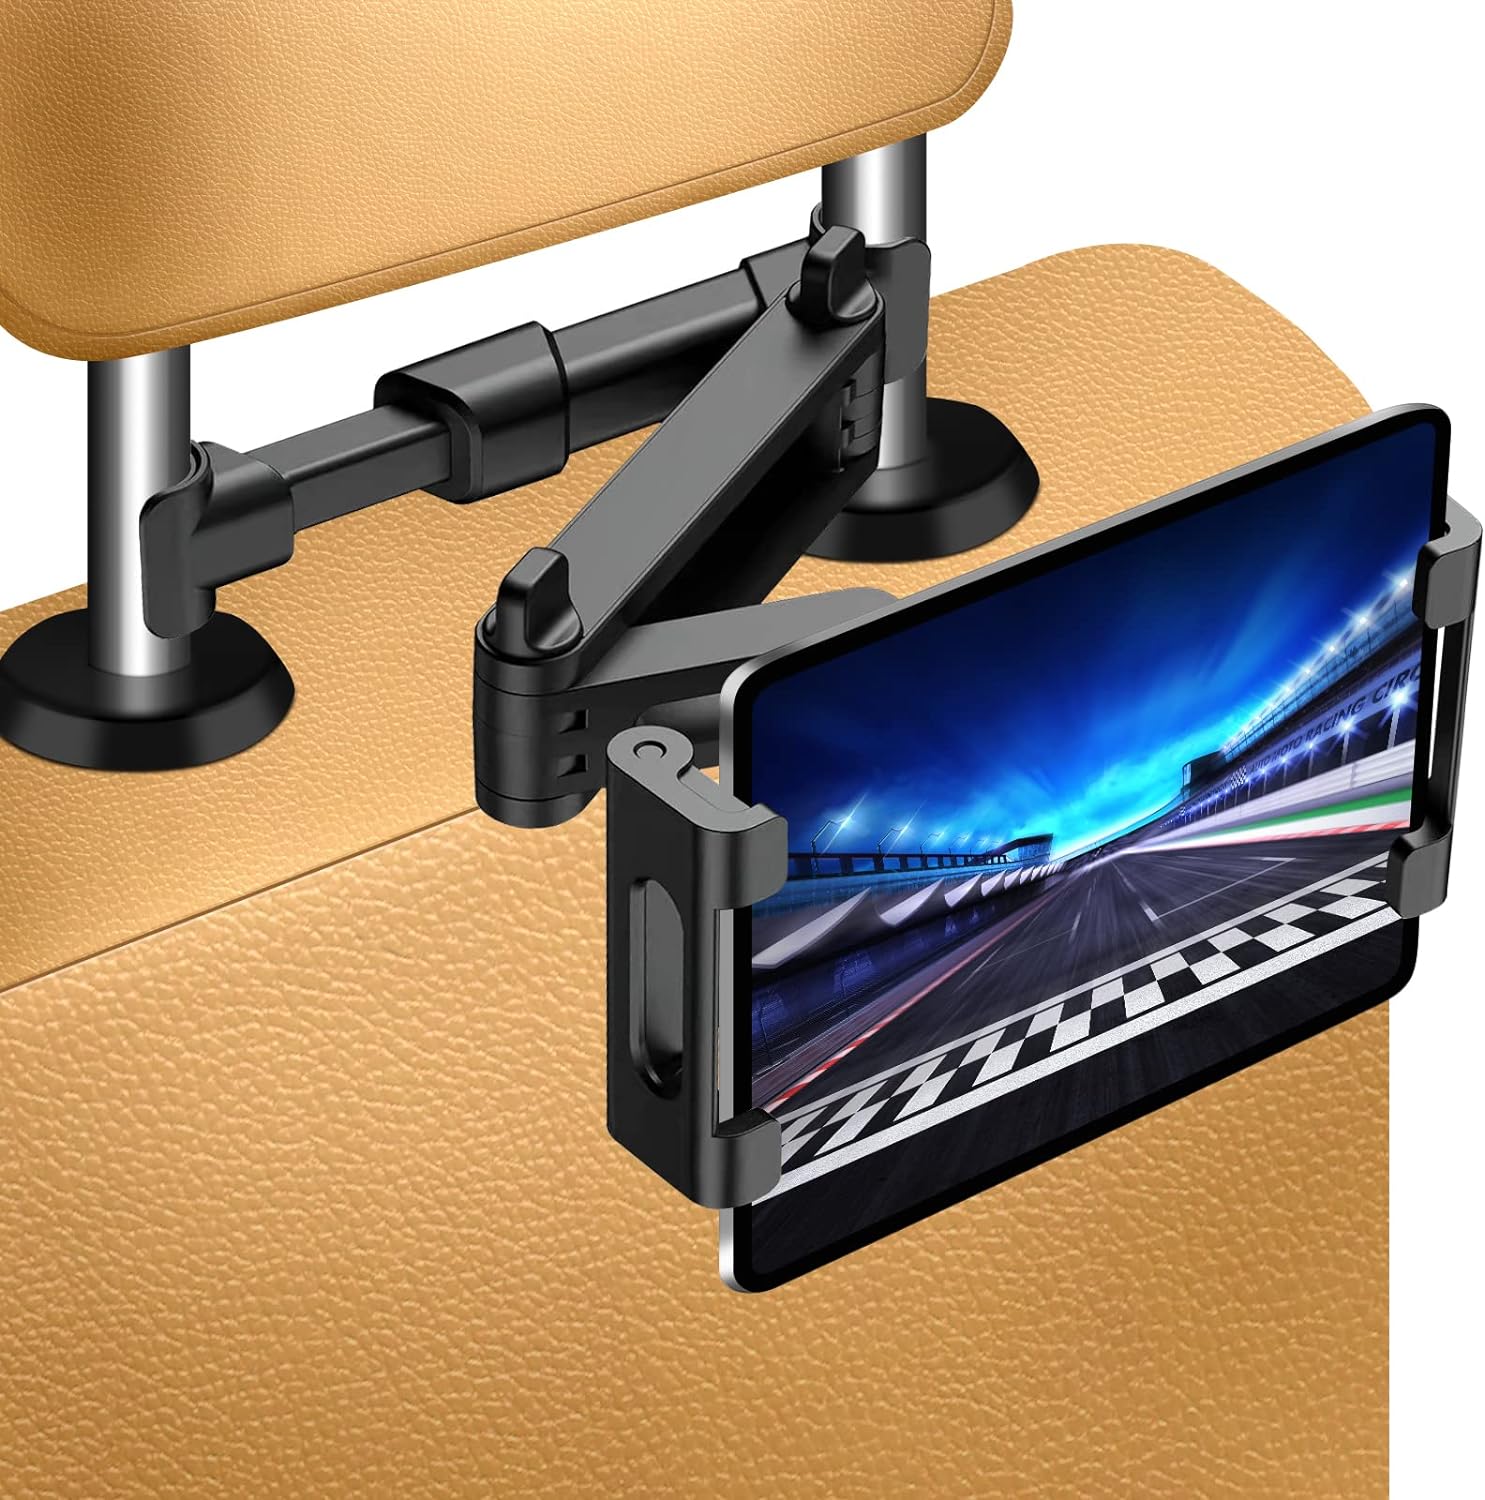 Tablet Holder for Car,ipad Headrest Mount for 5.5-18.4 Inch Tablet/ipad/Phones Car Tablet Holder with 360°Rotating Adjustable Trip Essentials,Black